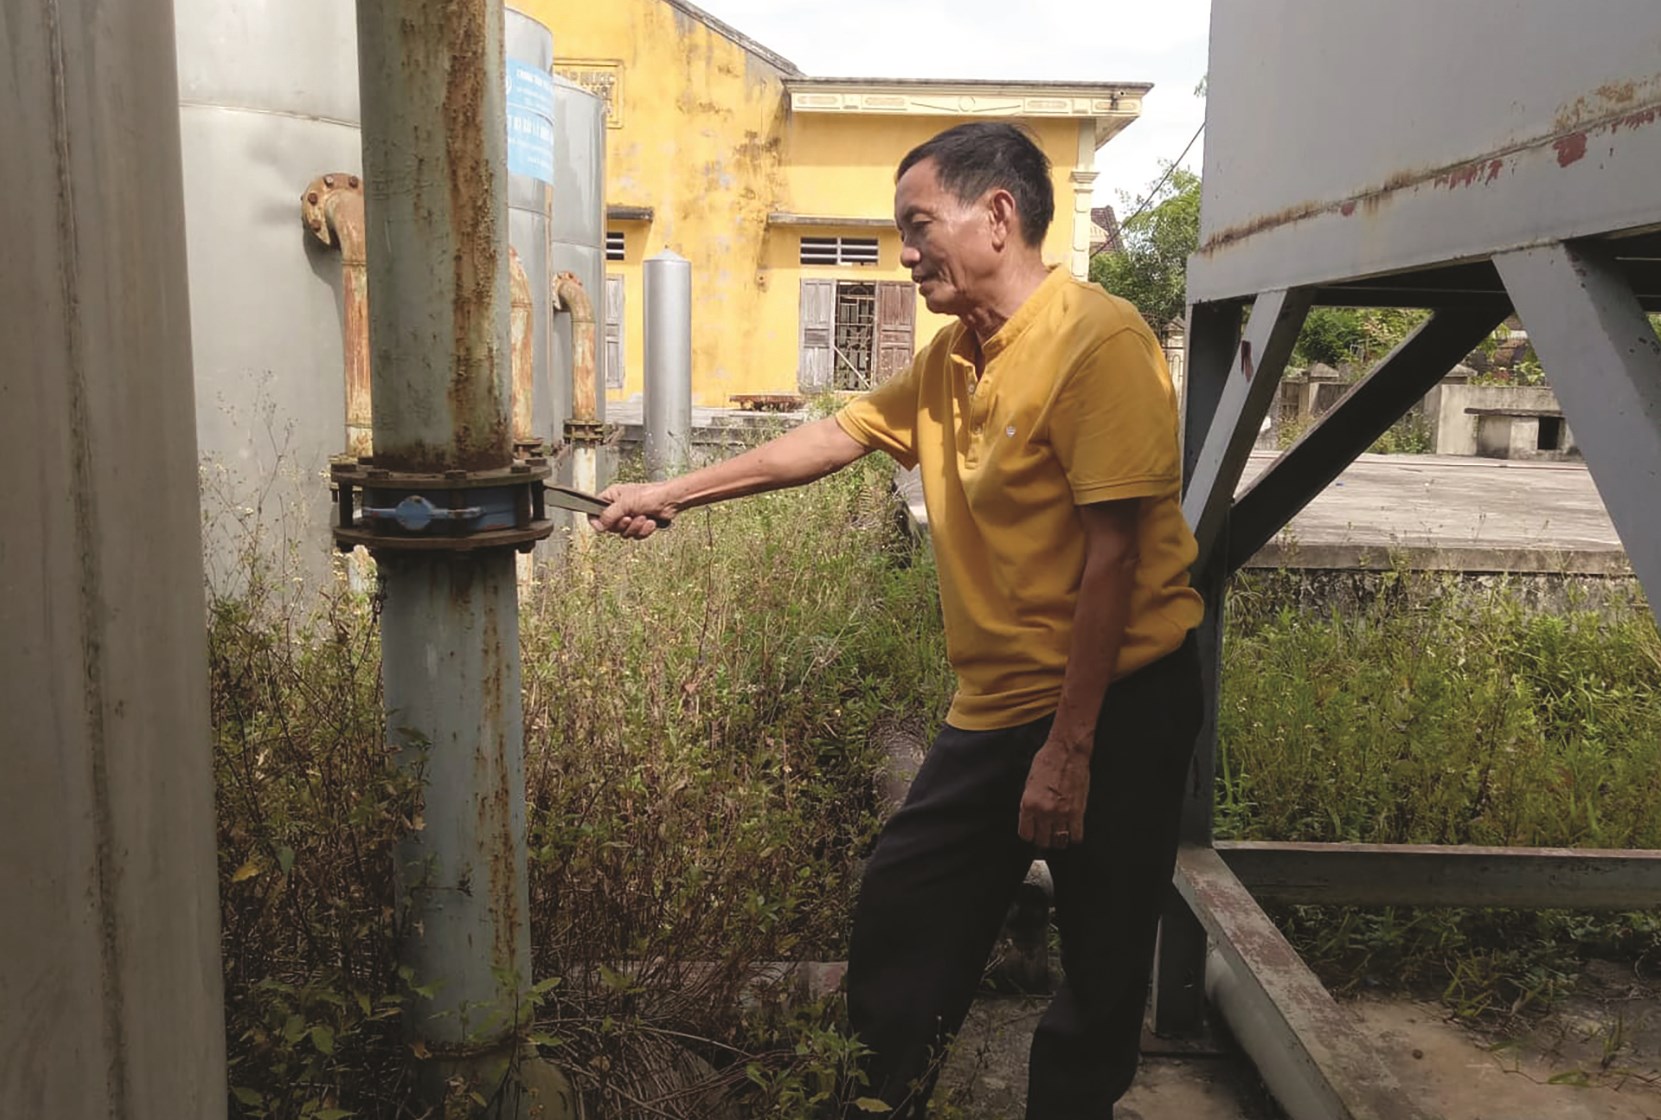 Ông Trần Quốc Ngọc, người được chính quyền xã giao nhiệm vụ trông coi Nhà máy nước cho rằng, nếu Nhà máy không được đầu tư sửa chữa sẽ rất lãng phí tiền của